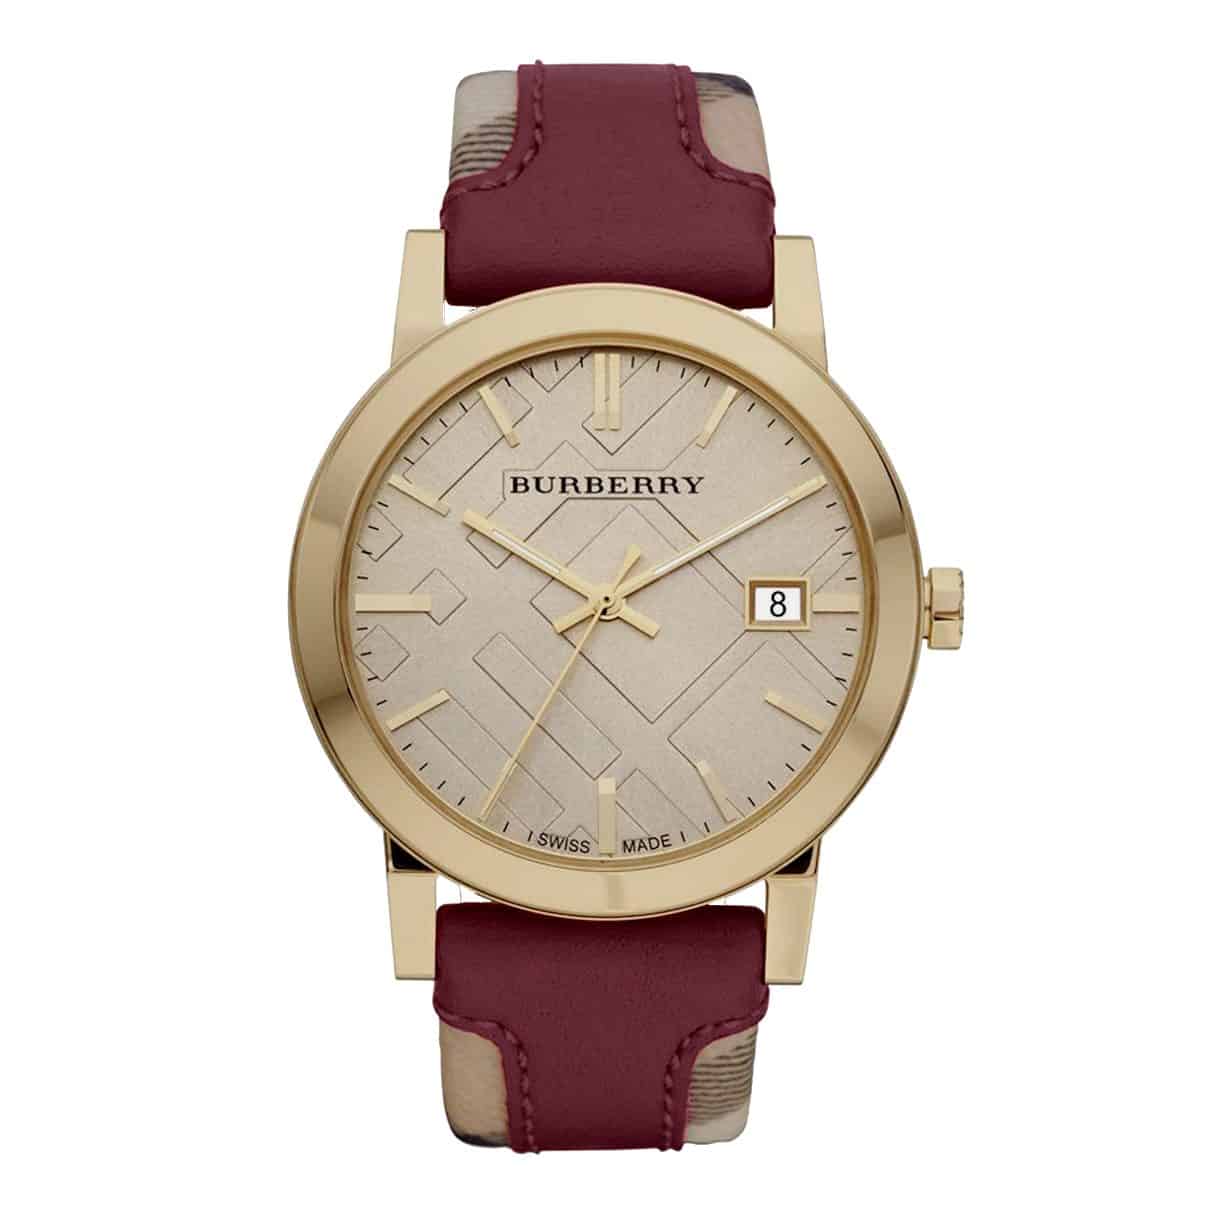 Giá của đồng hồ Burberry Tphcm chính hãng.